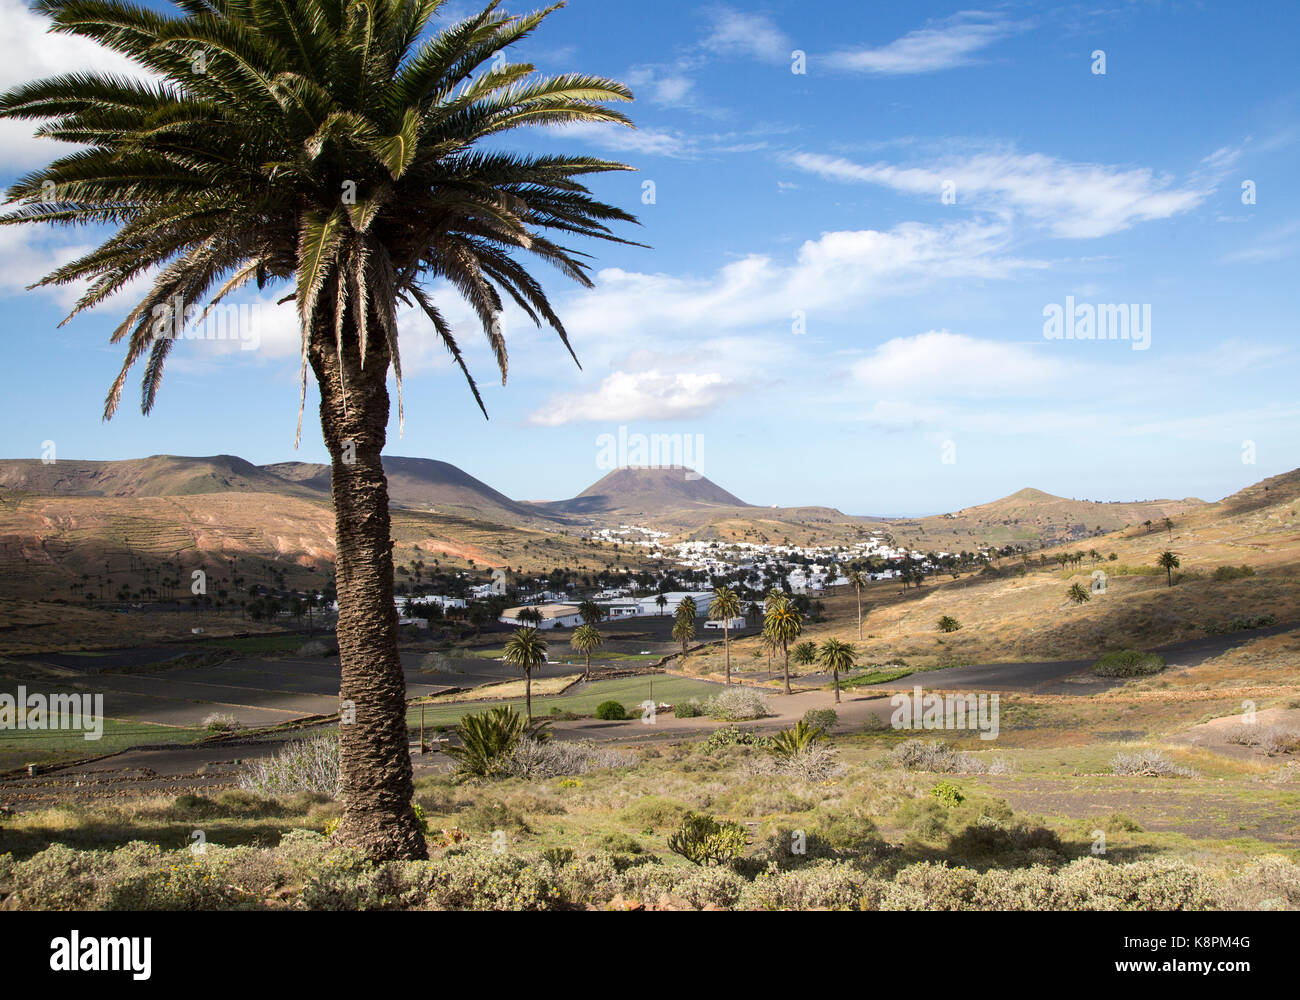 Blick über Kakteen und weiß getünchten Häusern, Monte Corona Vulkan Kegel, Dorf Haria, Lanzarote, Kanarische Inseln, Spanien Stockfoto